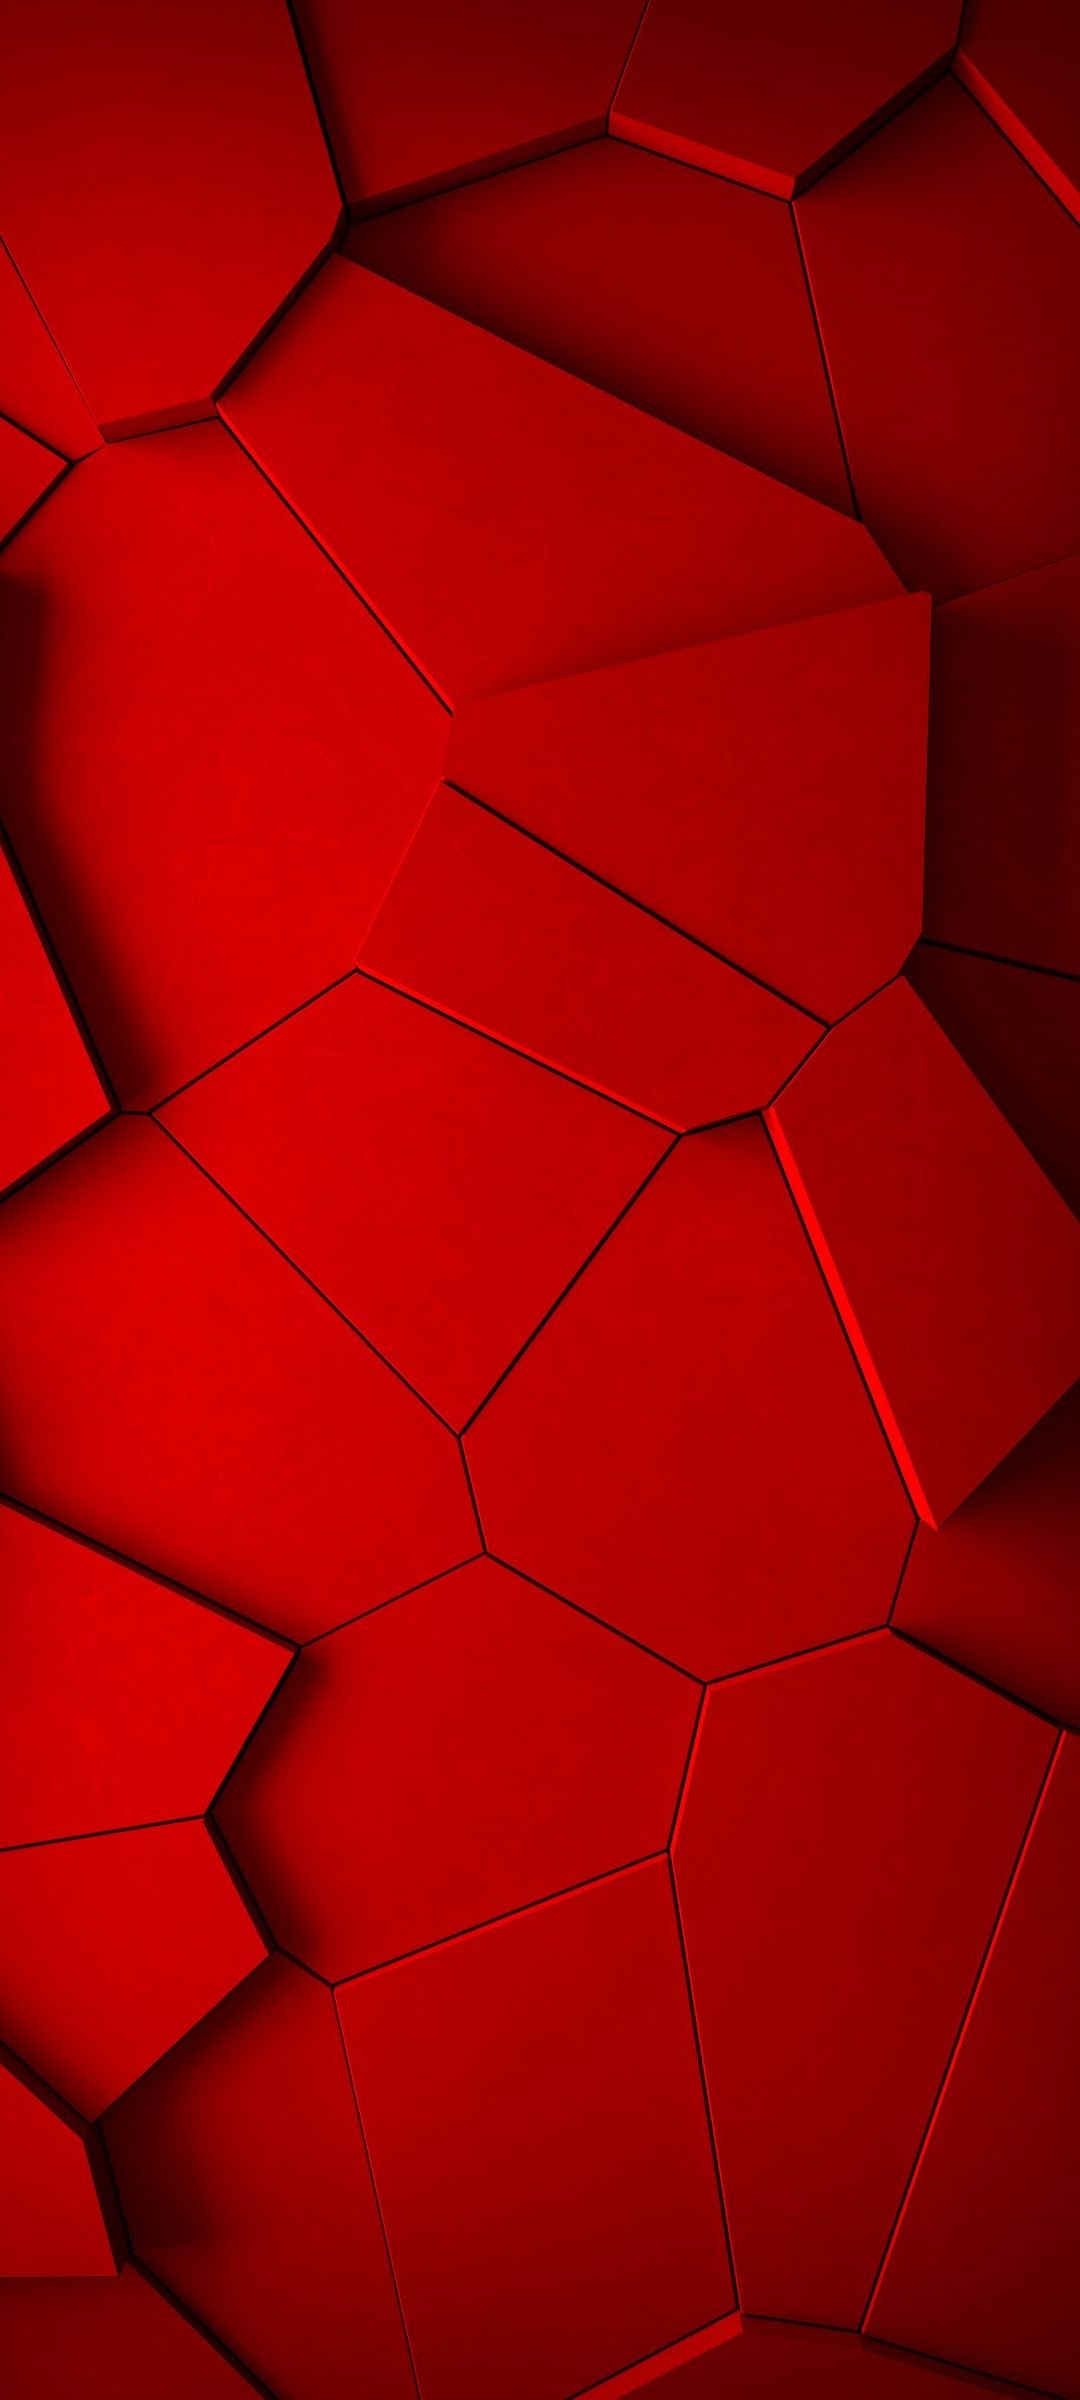 赤いひび割れた地面のようなテクスチャー Galaxy S21 5g Androidスマホ壁紙 待ち受け スマラン